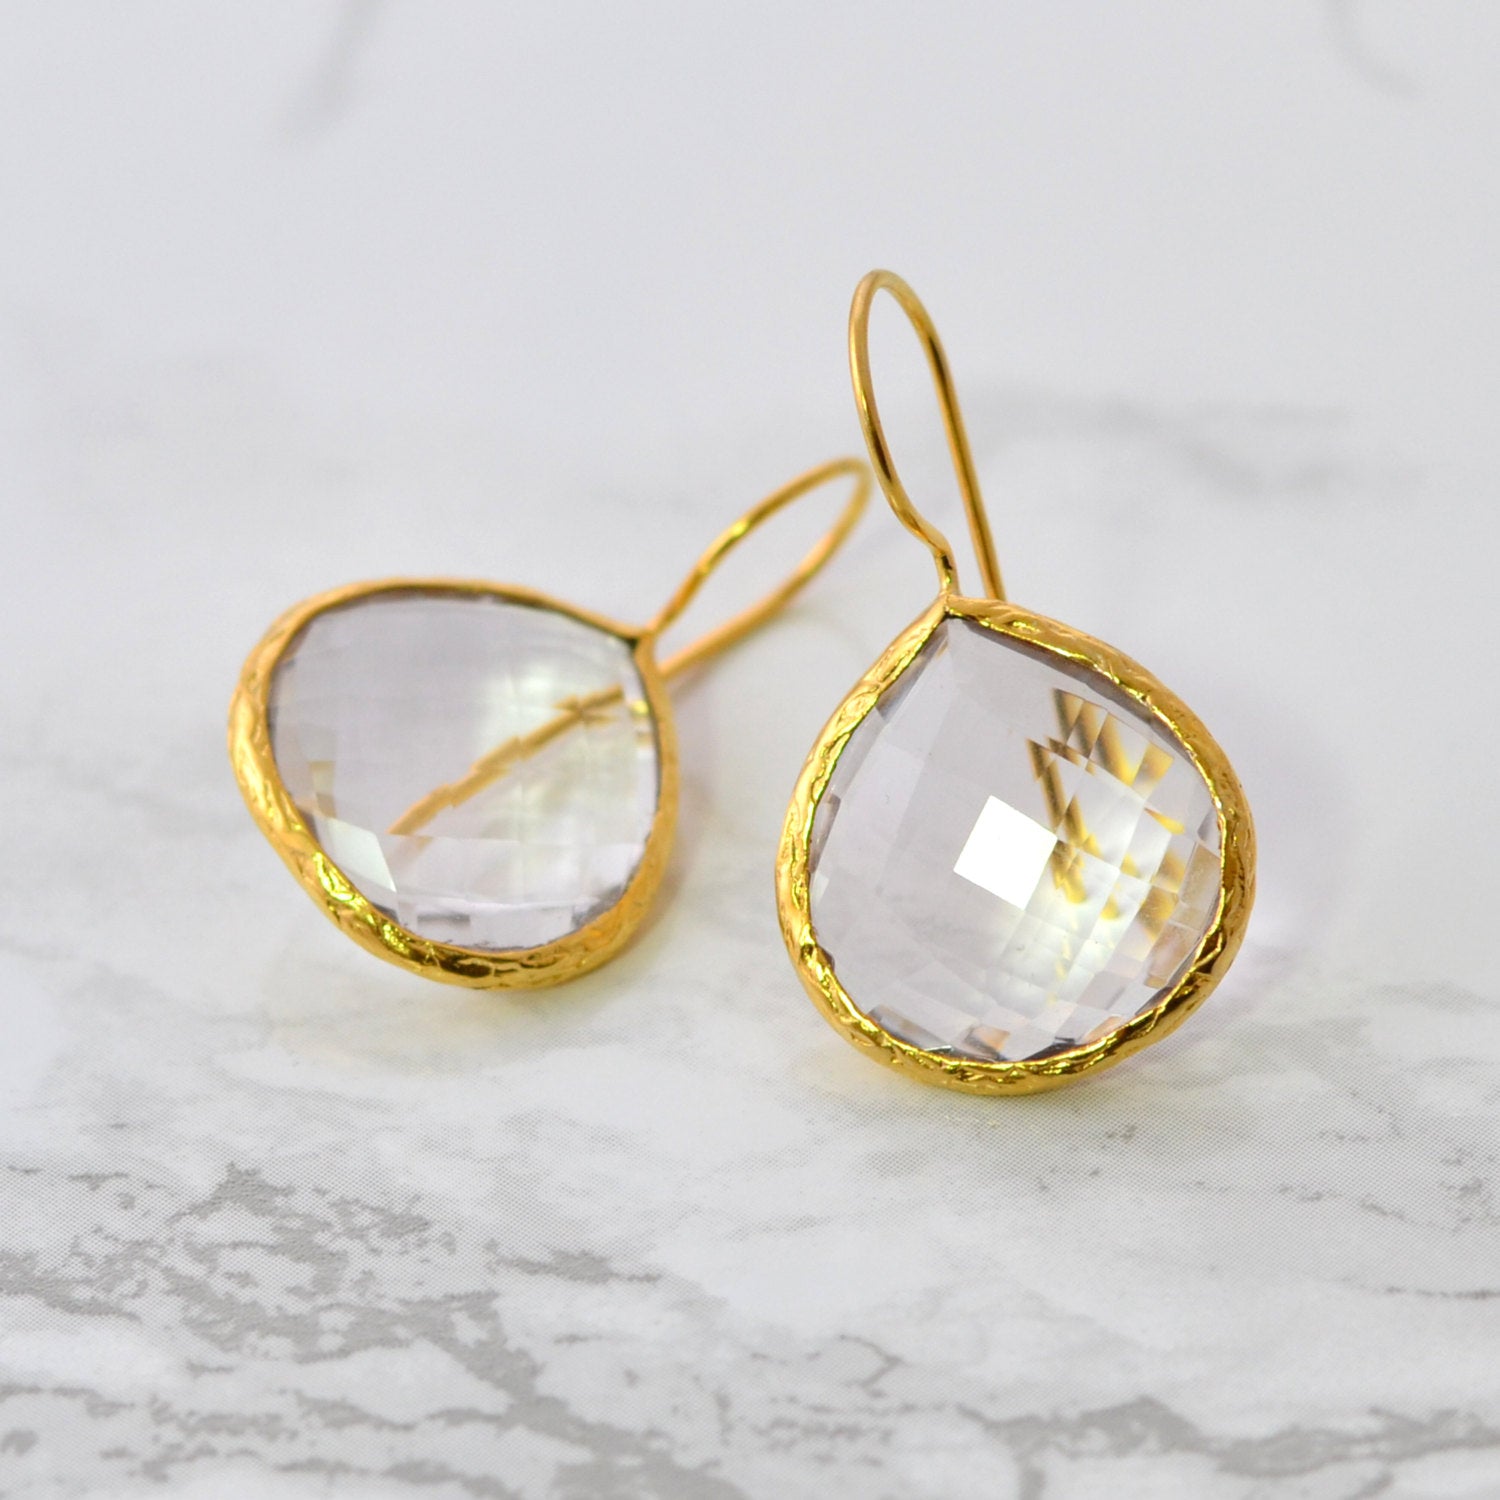 Clear Quartz Earring - Wedding Gemstone Earring - Elegant Simple Earring - Tear Drop Earring - Gold Framed Earring - Bridesmaid Earring